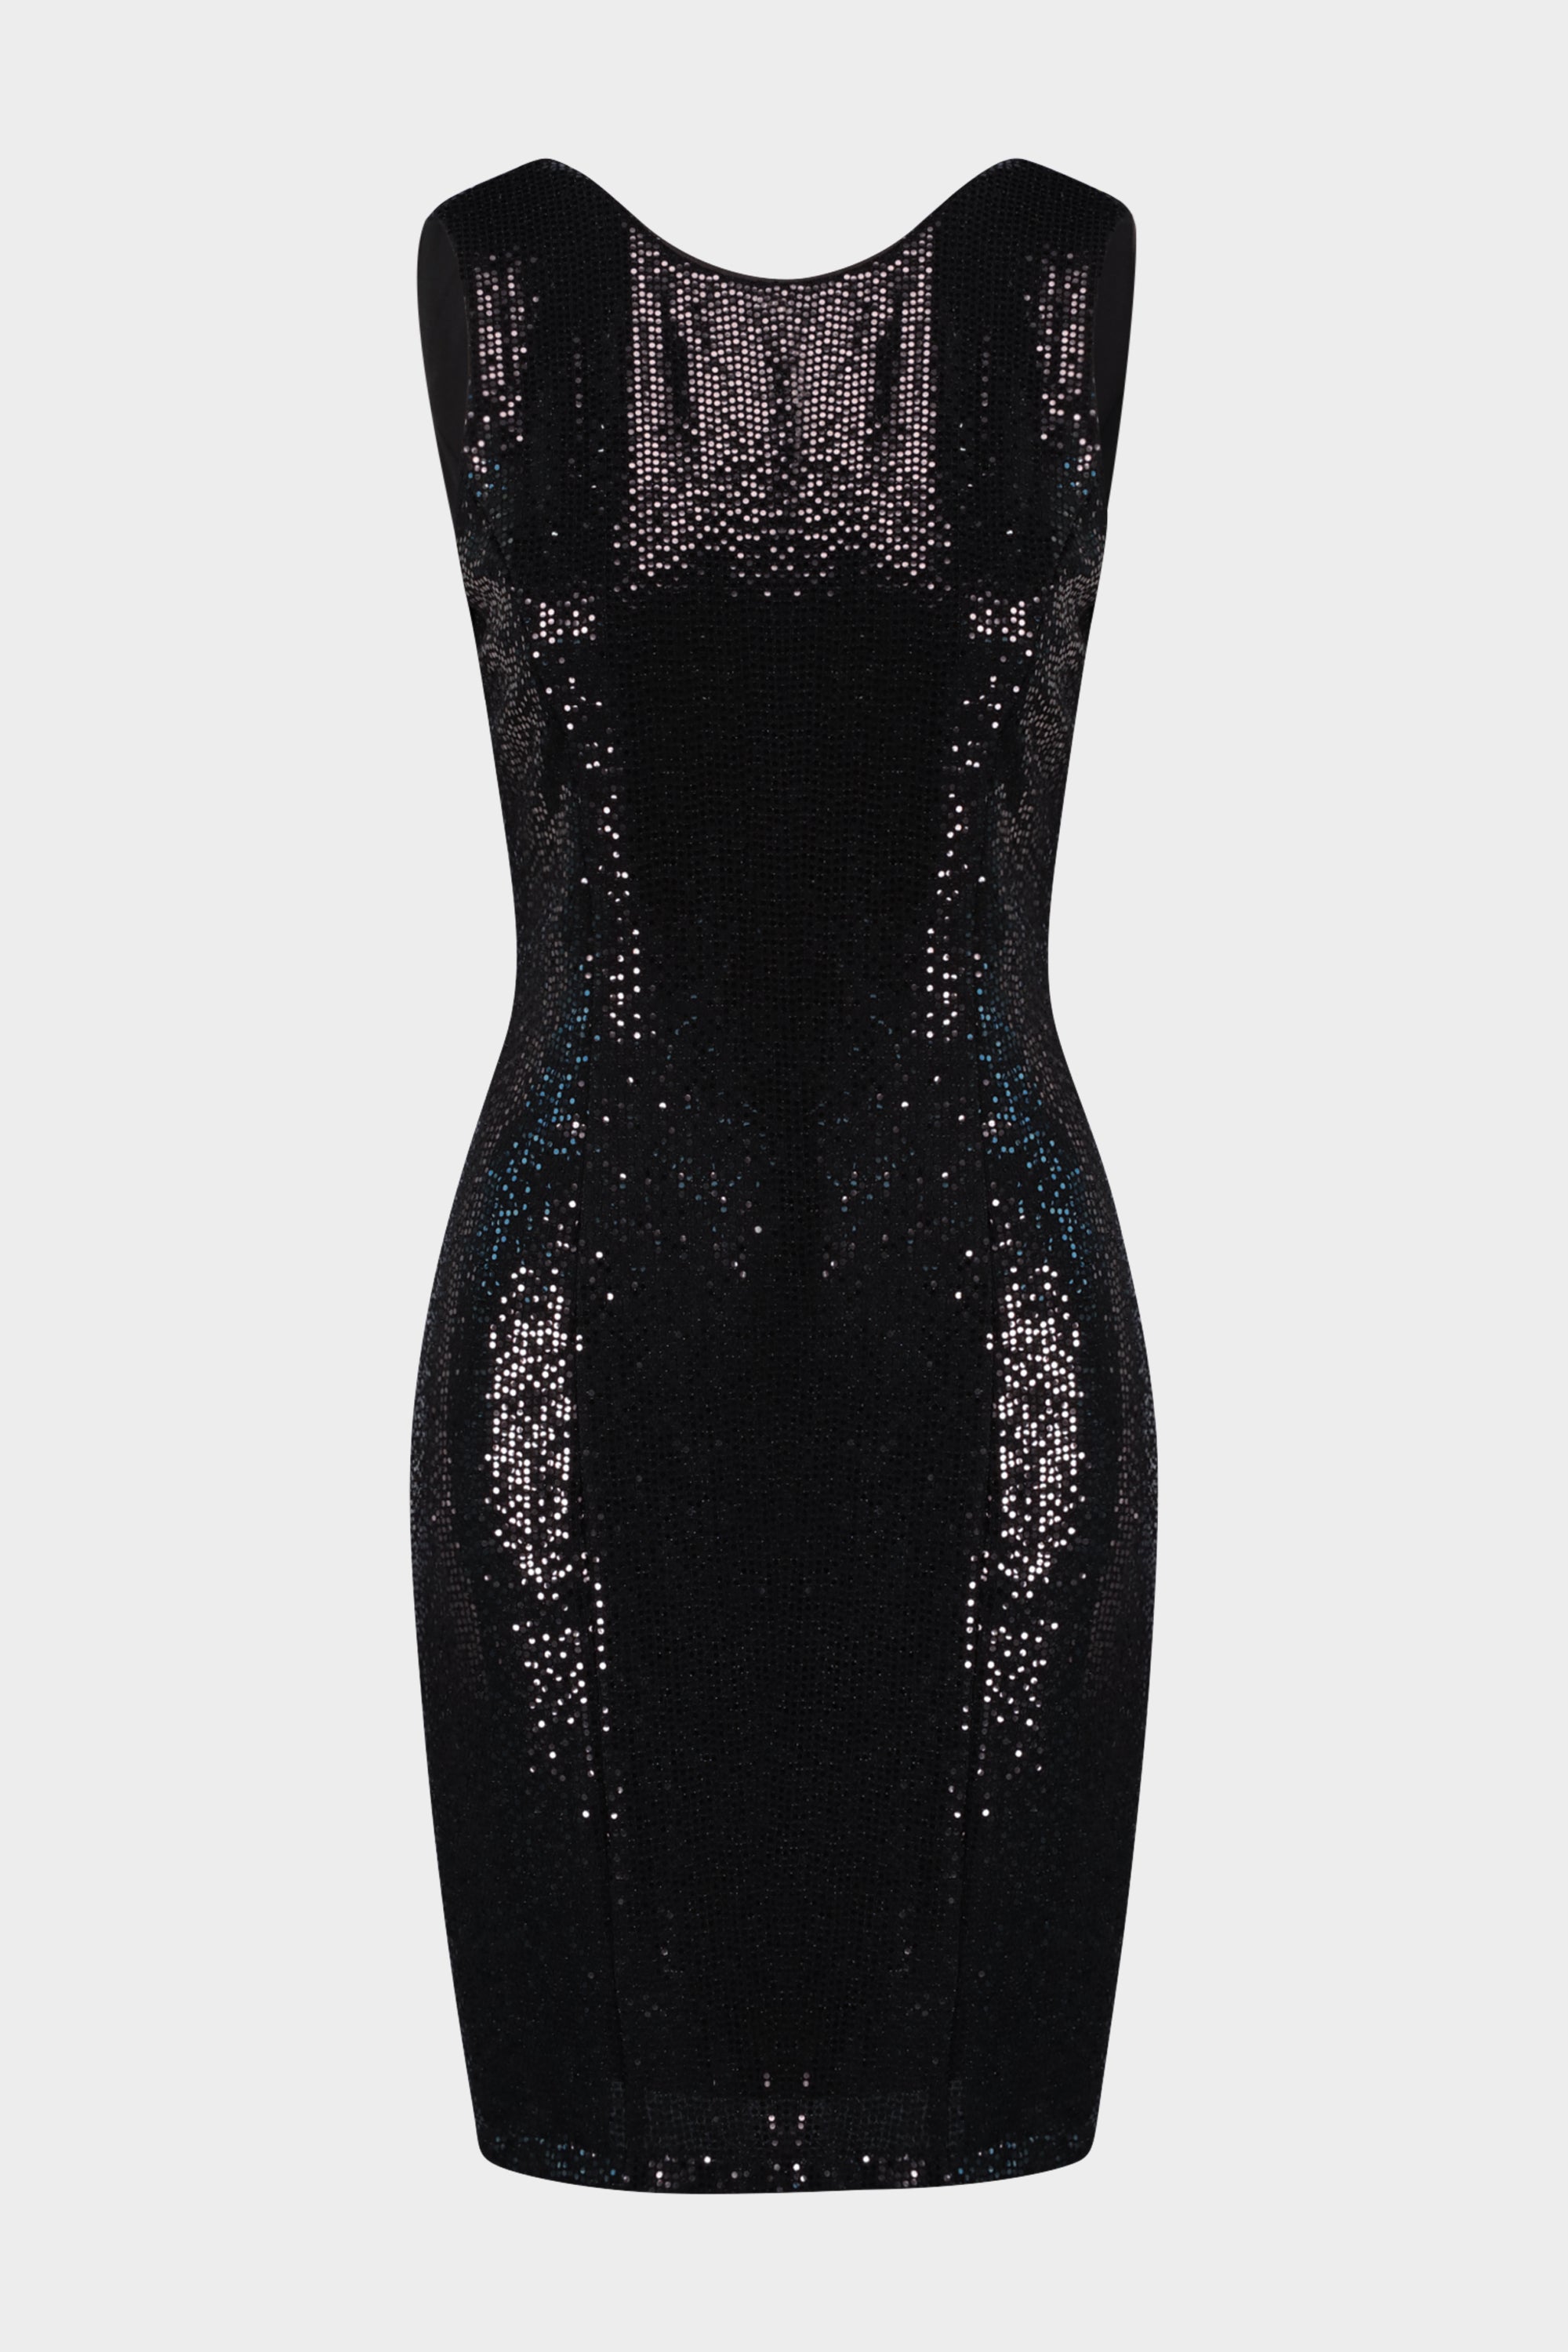 שמלת איי ליין לנשים מוטיב נצנצים LIU JO Vendome online | ונדום .